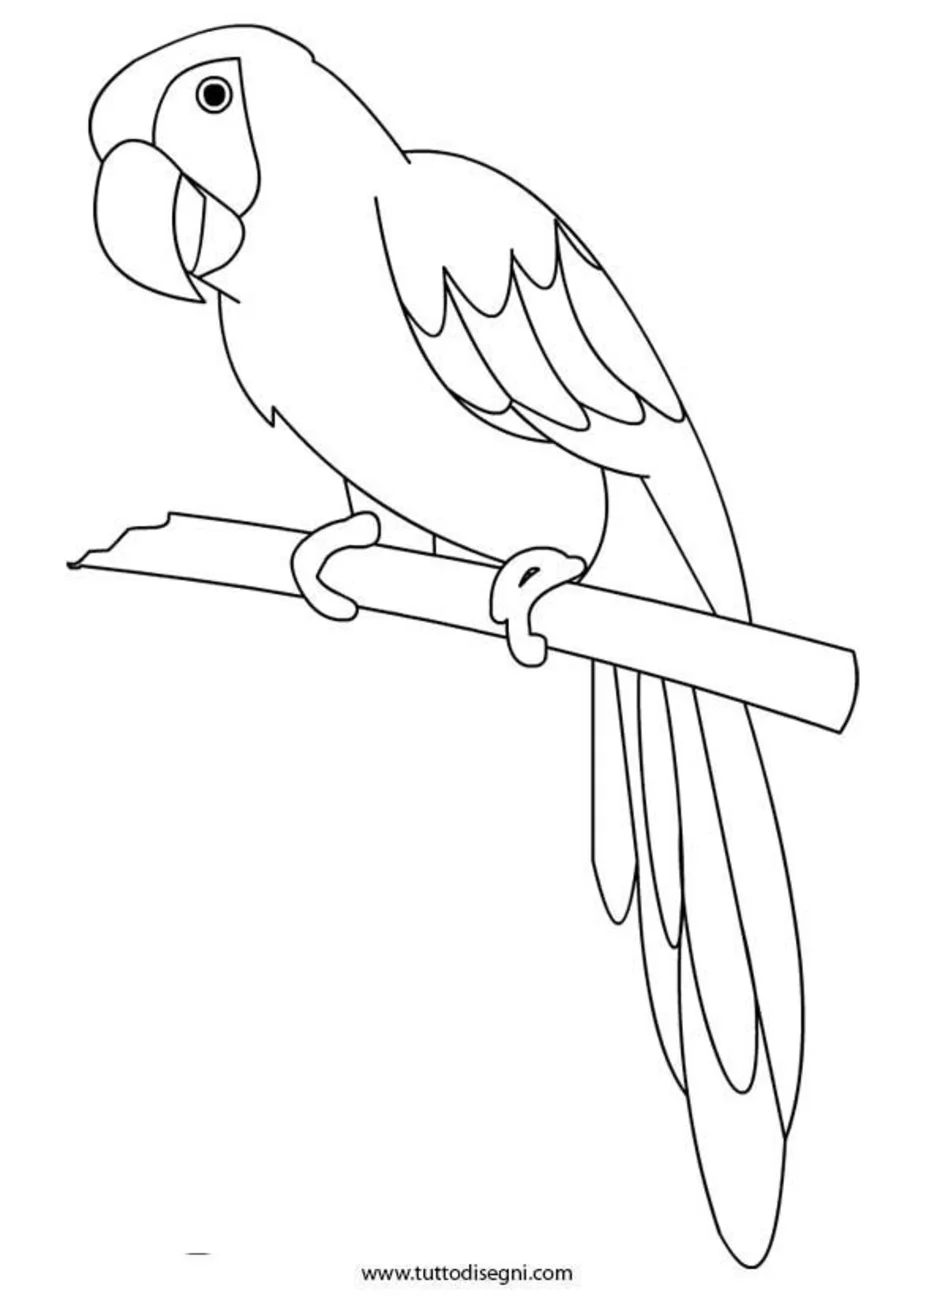 Трафарет попугая для рисования